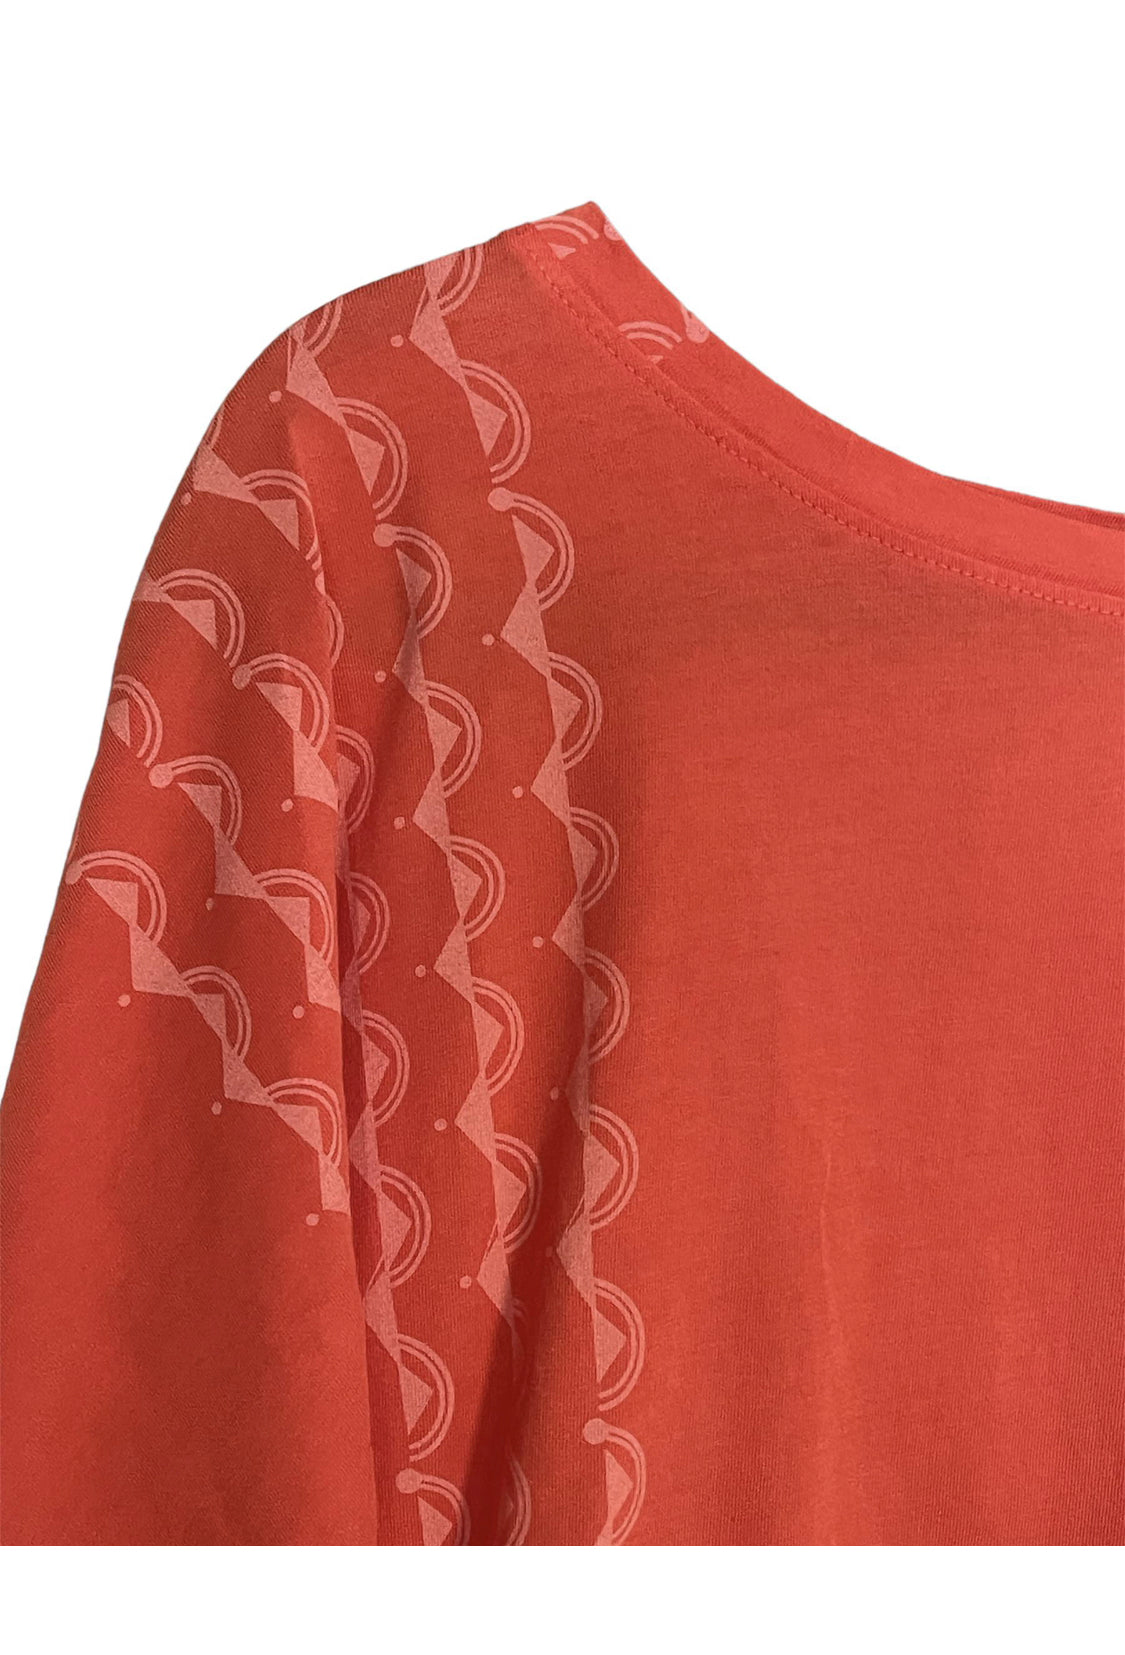 Haumea I. - Nā Mo'opuna | Kimono top - orange - ALL SALES FINAL